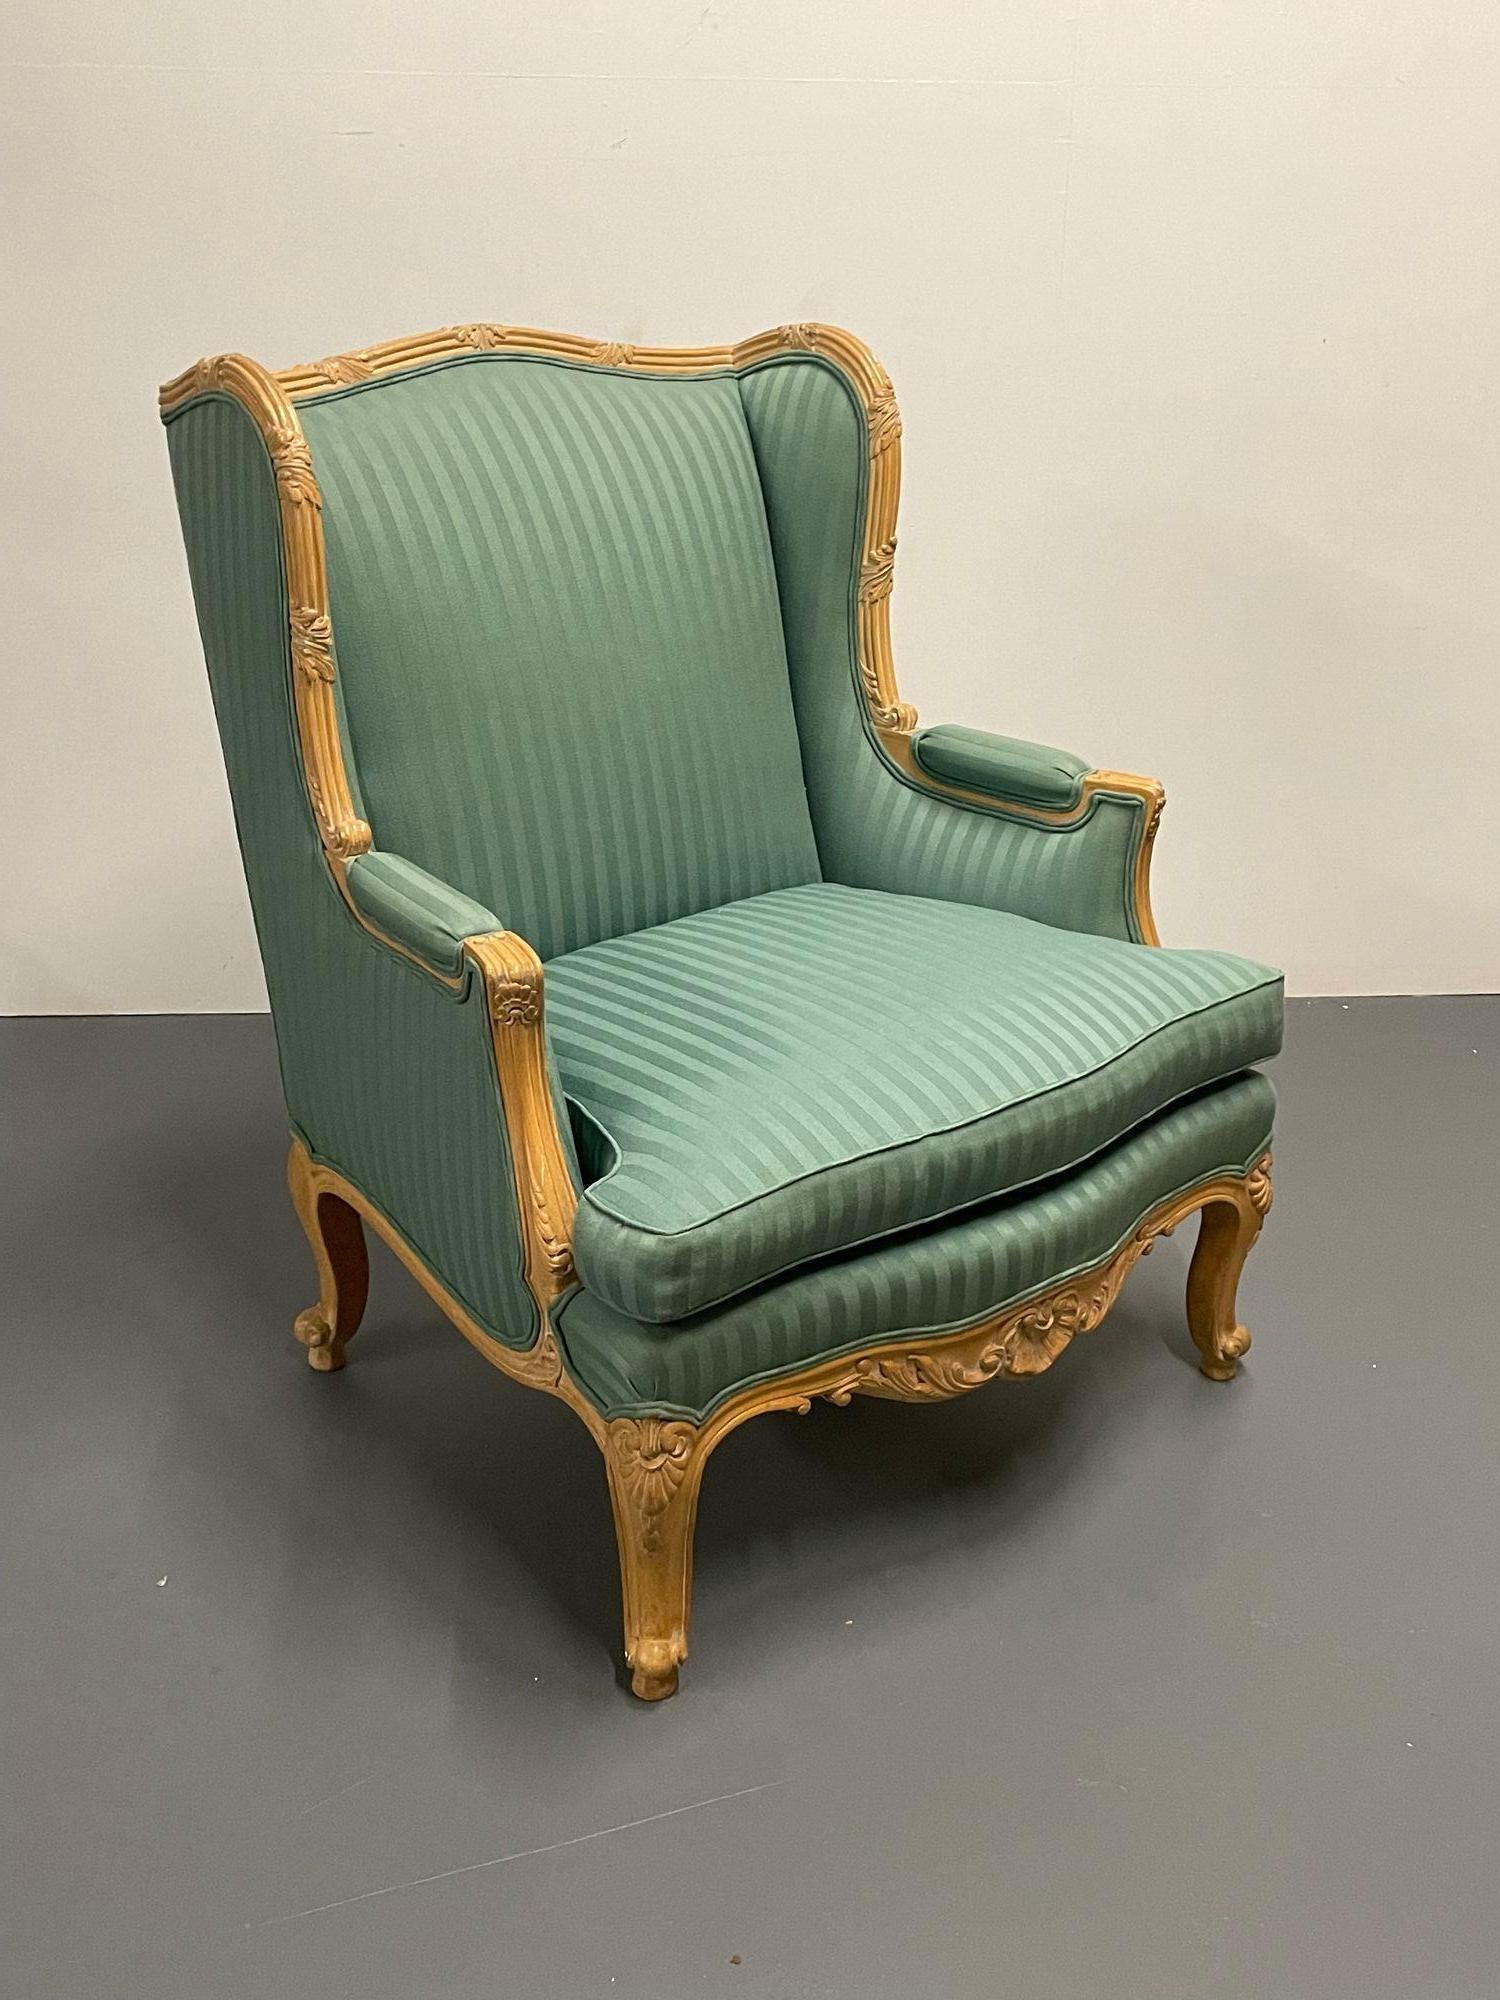 Paire de fauteuils à haut dossier de style Louis XV. Cette paire de chaises longues en bois massif finement sculpté fera sensation dans un salon ou un bureau. La tapisserie à rayures verdâtres est propre et ne présente que de très légères taches.